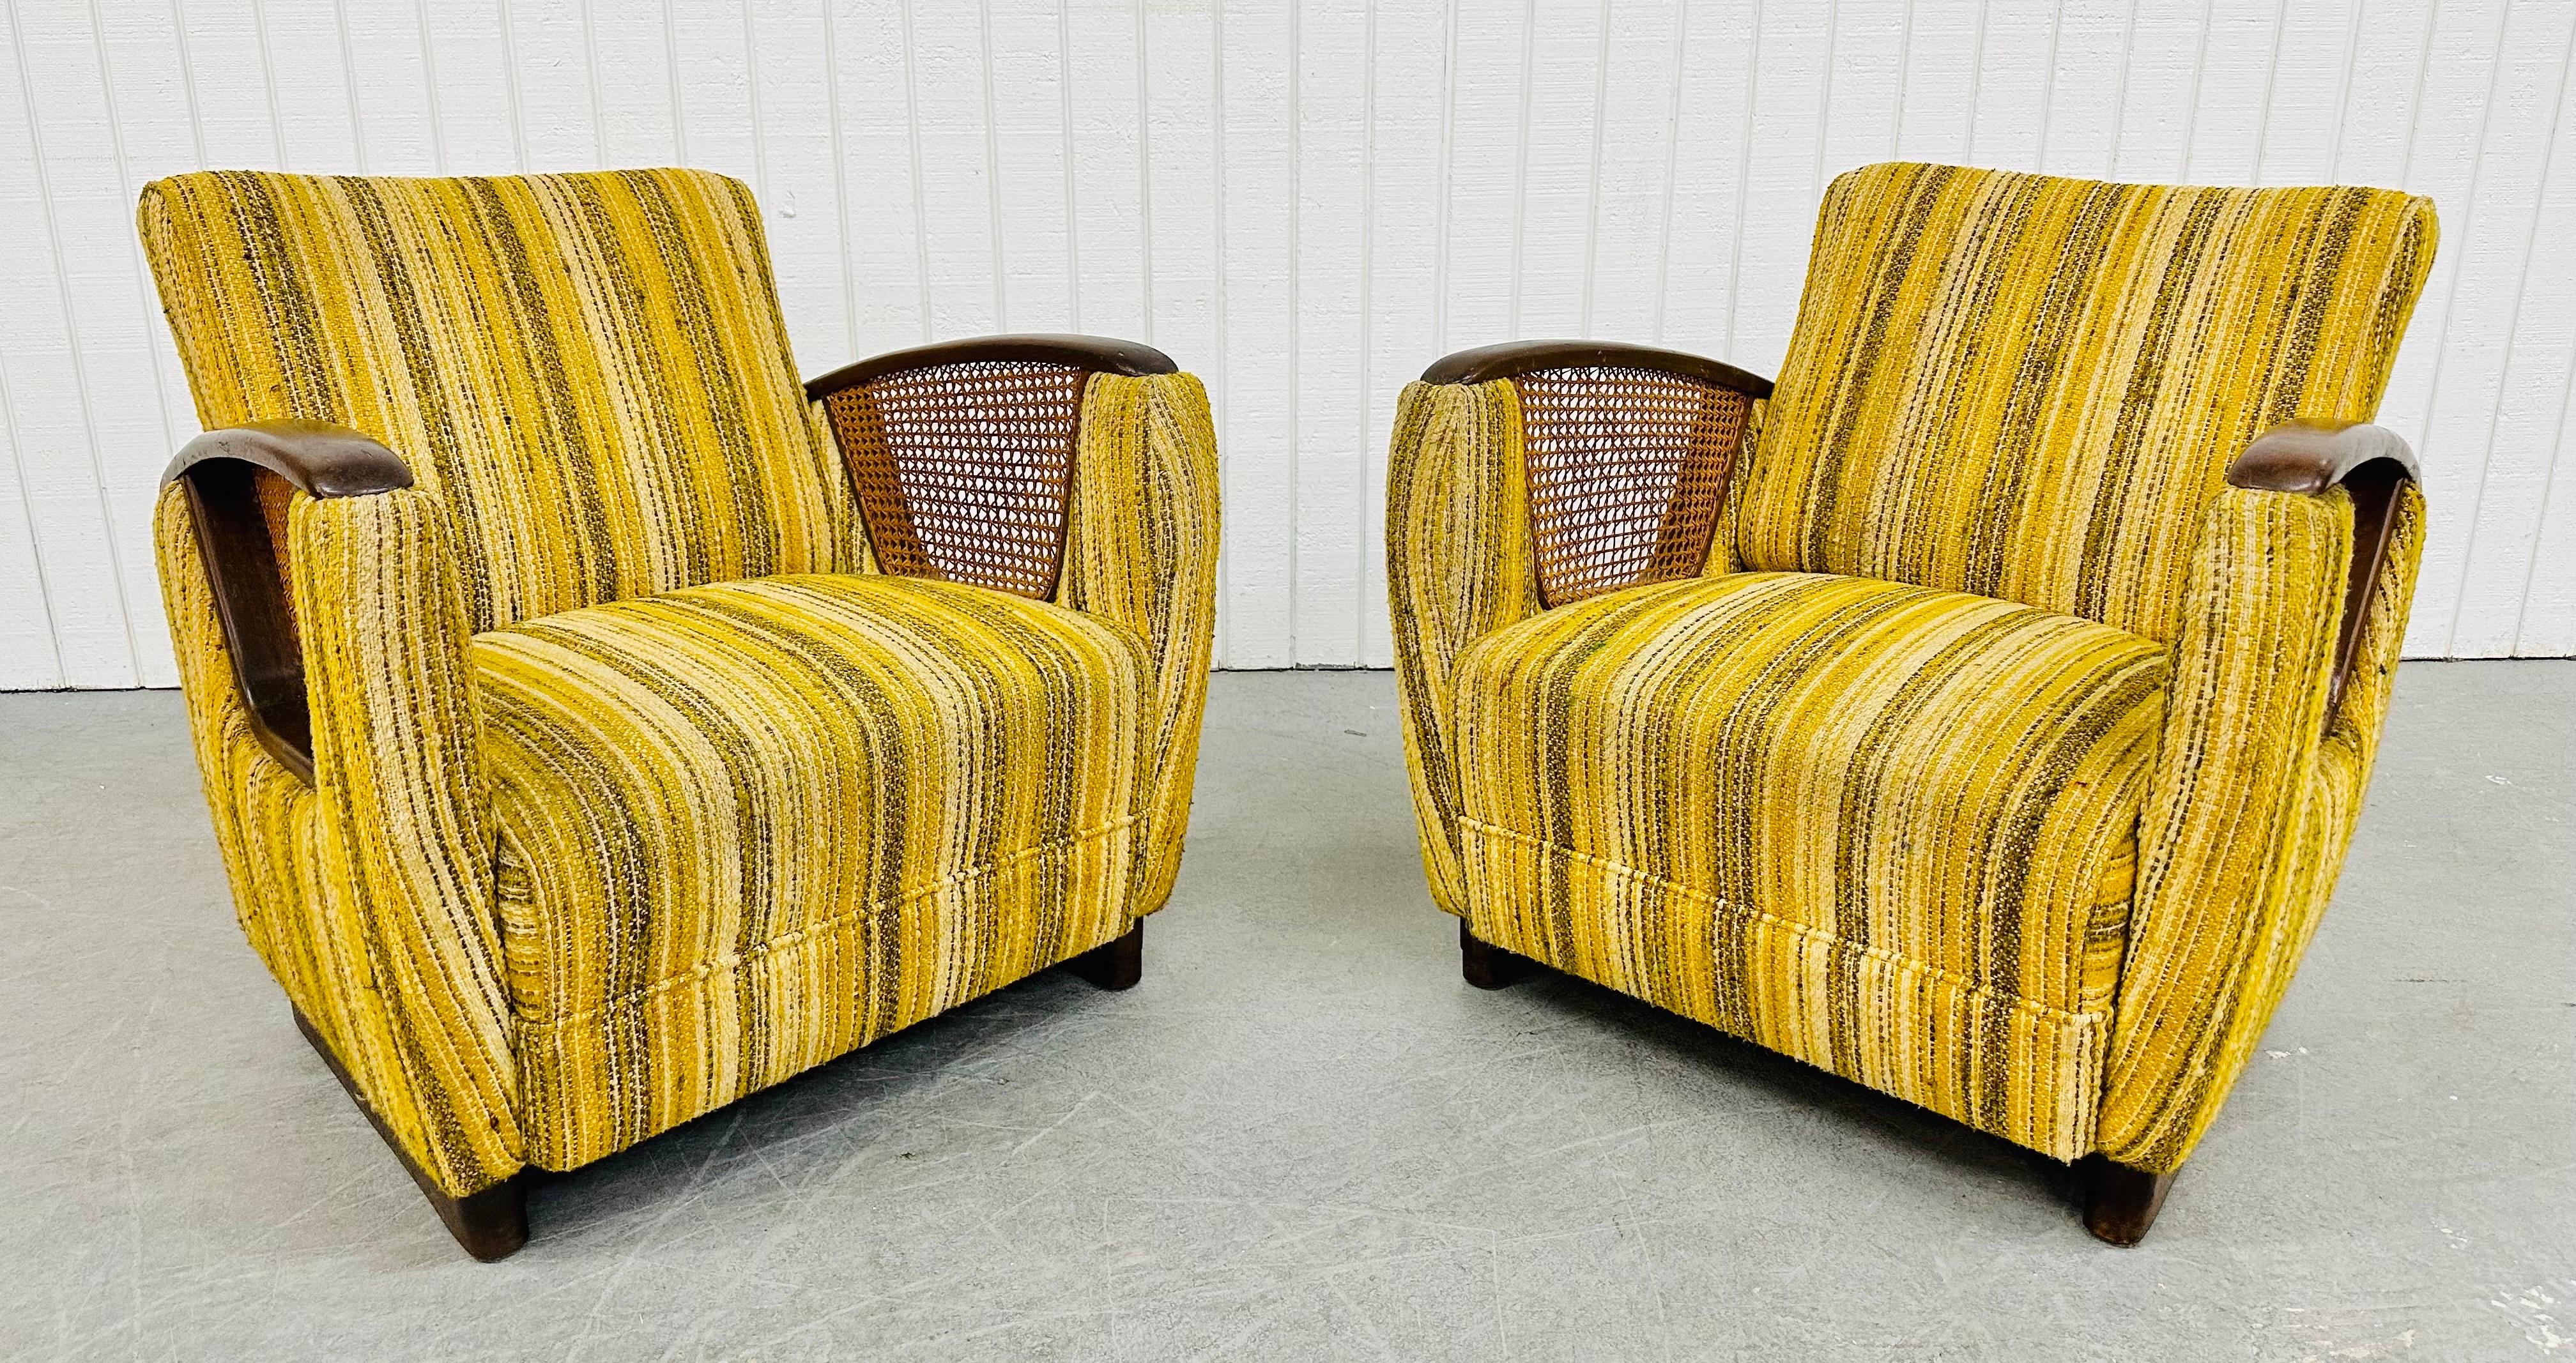 Diese Auflistung ist für ein Paar von Mid-Century Modern Deco Style Club Chairs. Mit einem Design im Art-Déco-Stil, abgerundeten Armen mit hölzernen Armlehnen, Rohrseiten, original gelb gestreifter Polsterung und modernen Beinen mit